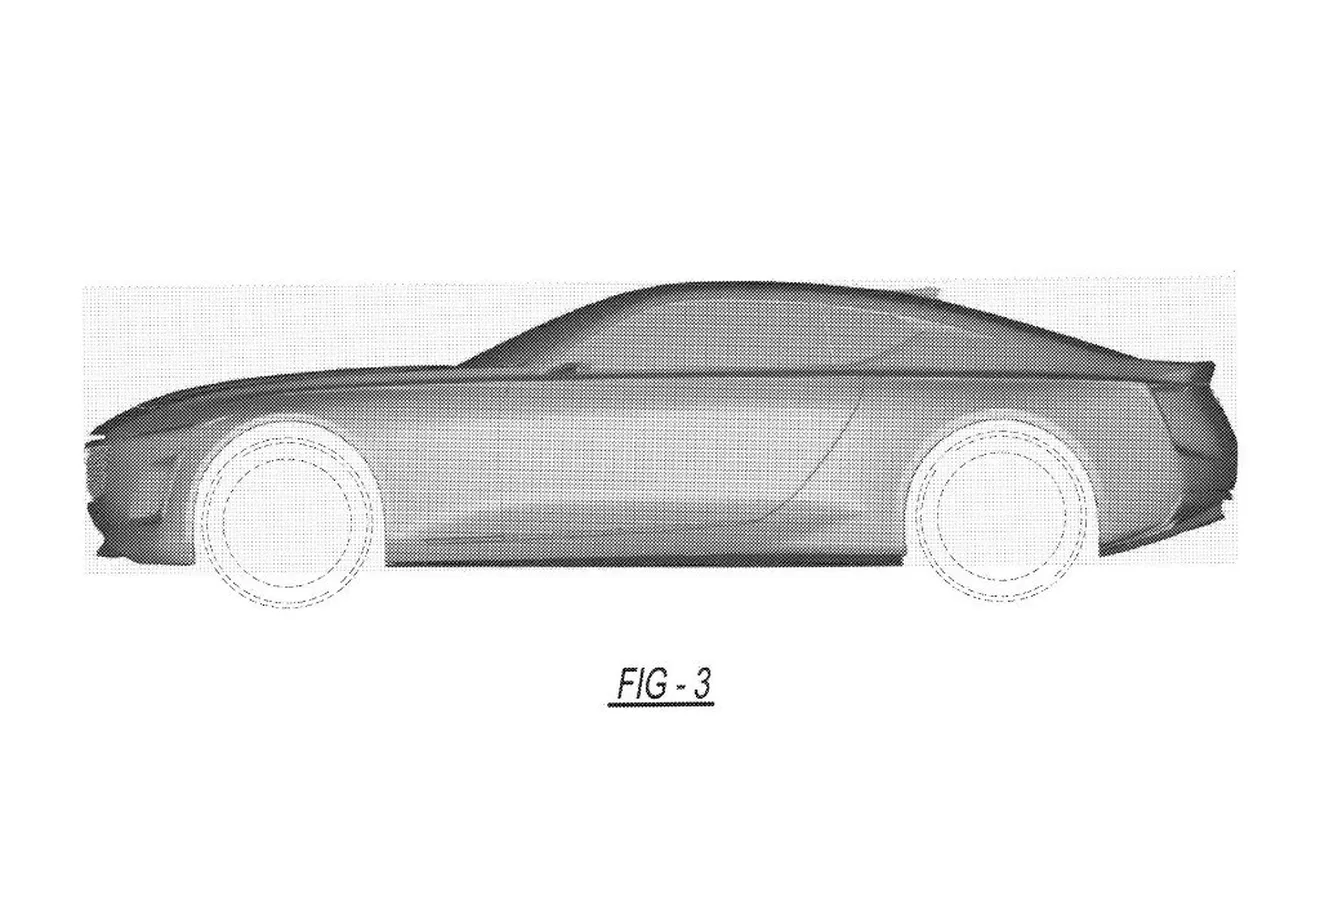 Filtrado un nuevo coupé conceptual de Cadillac gracias a sus patentes